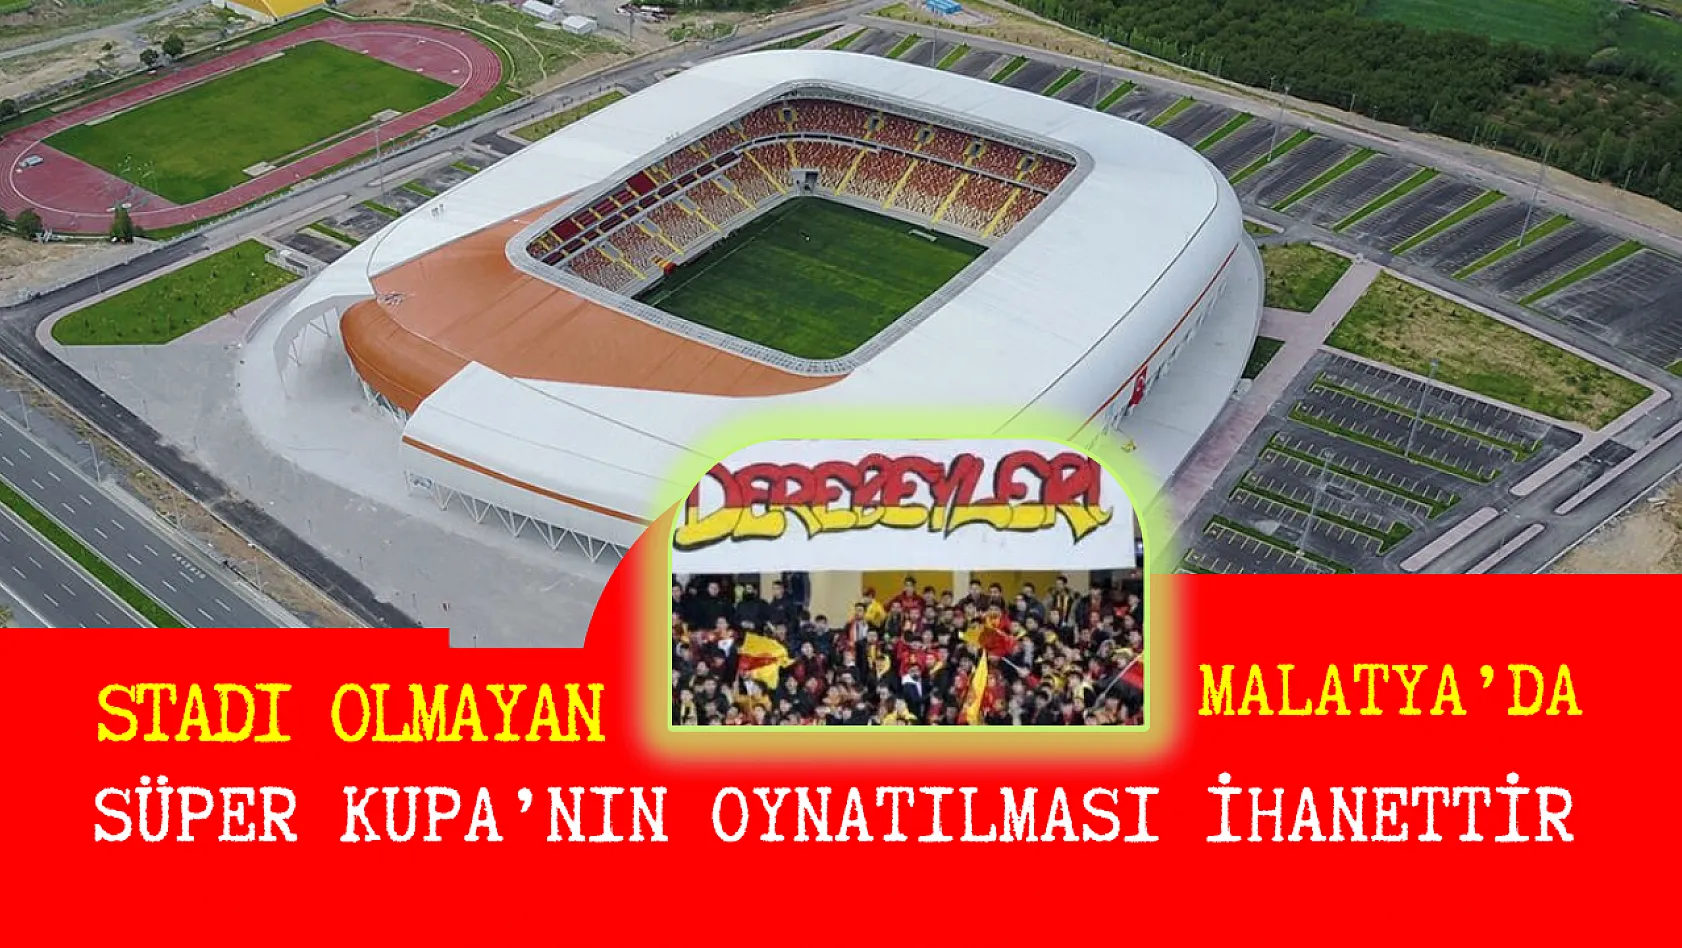 Stadı olmayan Malatya'da Süper Kupa'nın oynatılması ihanettir